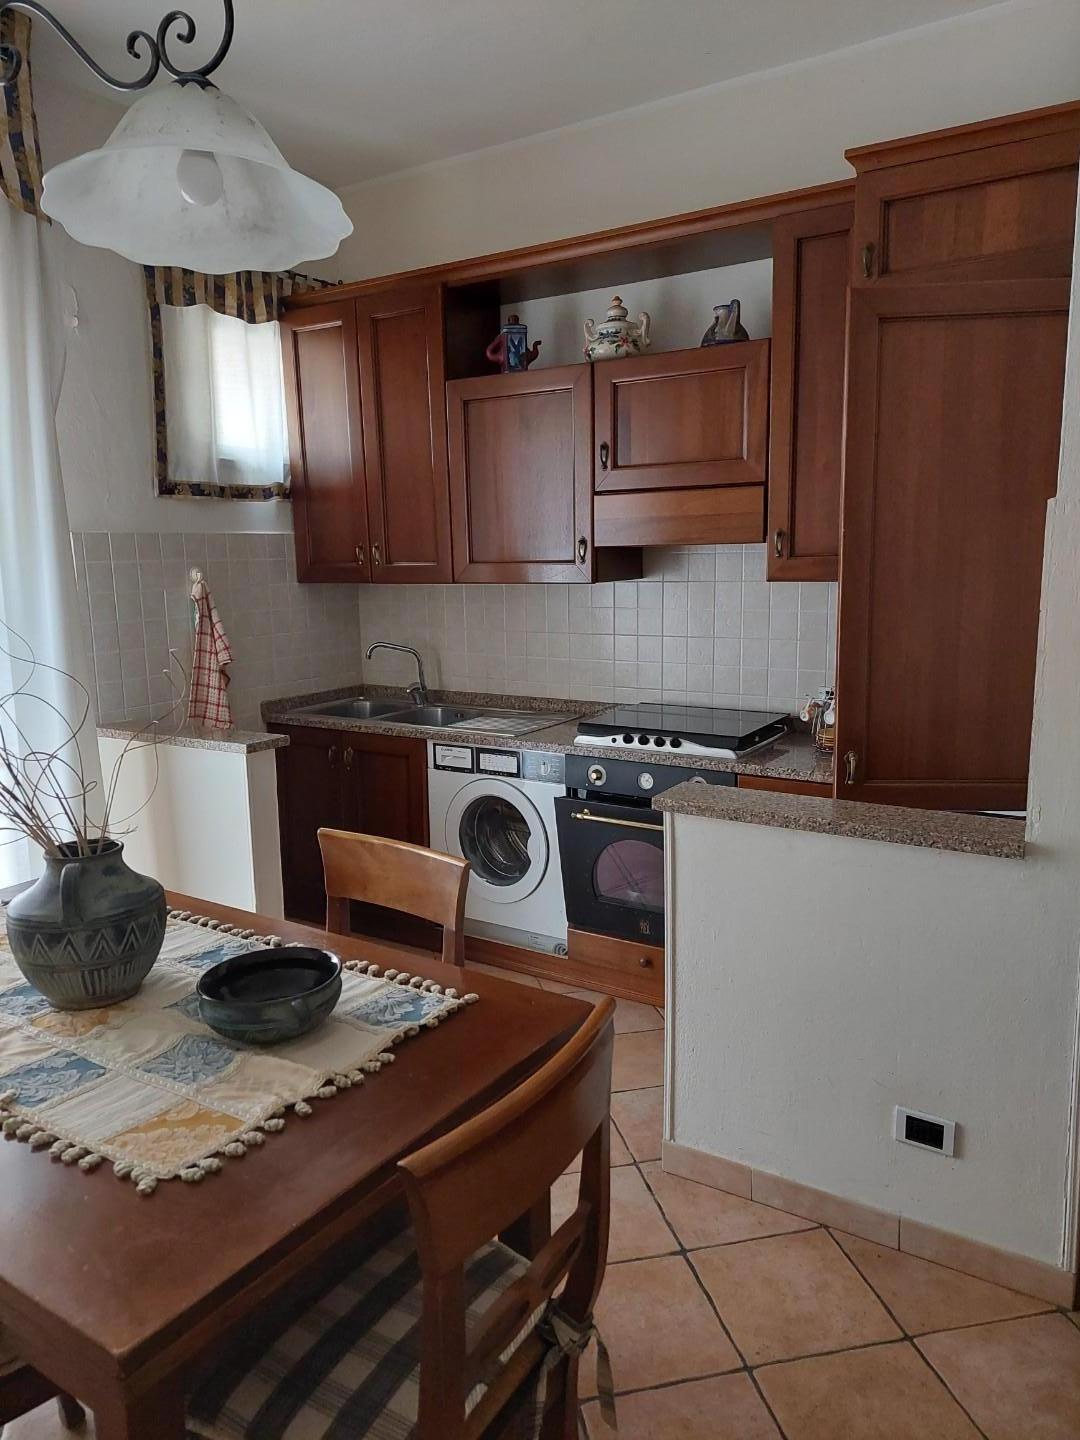 Appartamento in vendita a Castelfranco di Sotto, 5 locali, prezzo € 115.000 | PortaleAgenzieImmobiliari.it